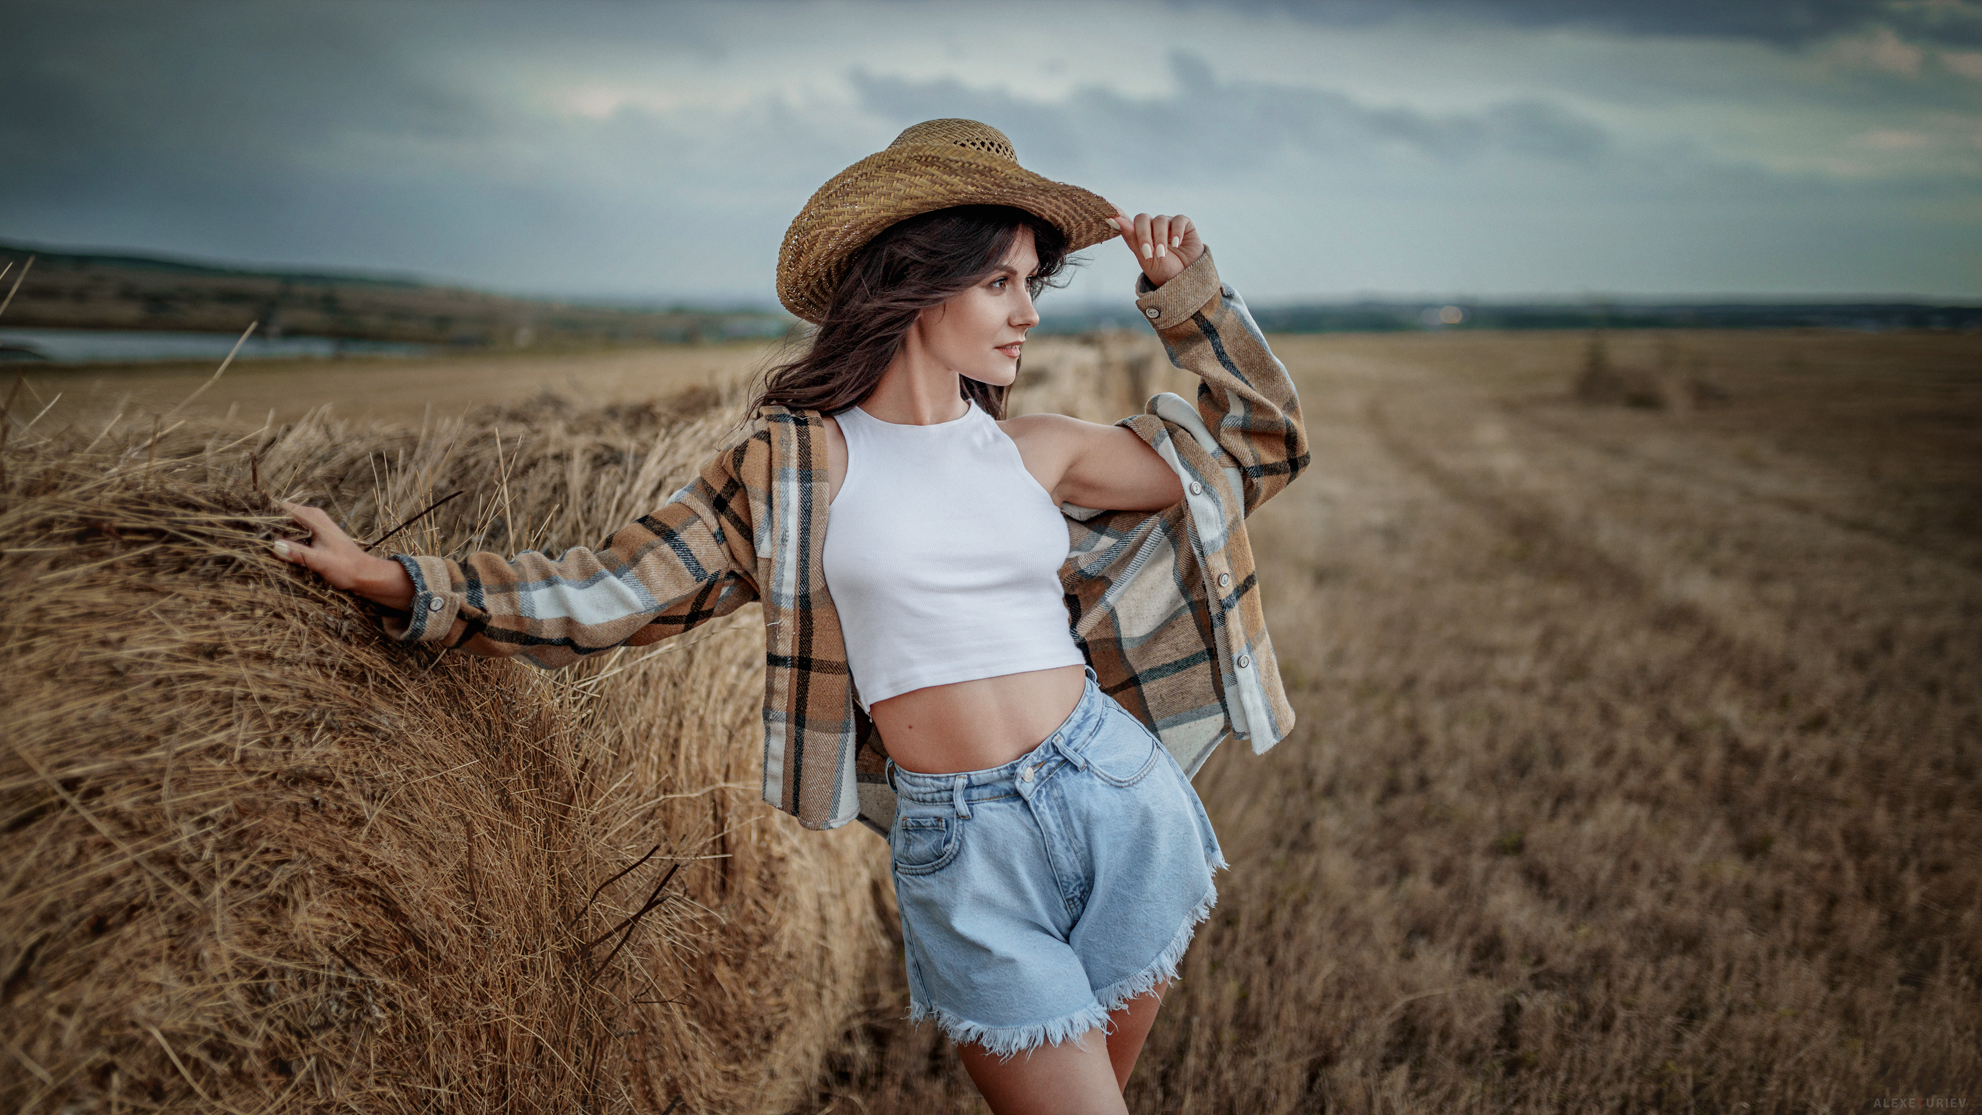 Aleksey Yuriev Women Hat Looking Away Brunette Wind Plaid Shirt Shorts Jeans Haystacks Field 1982x1115